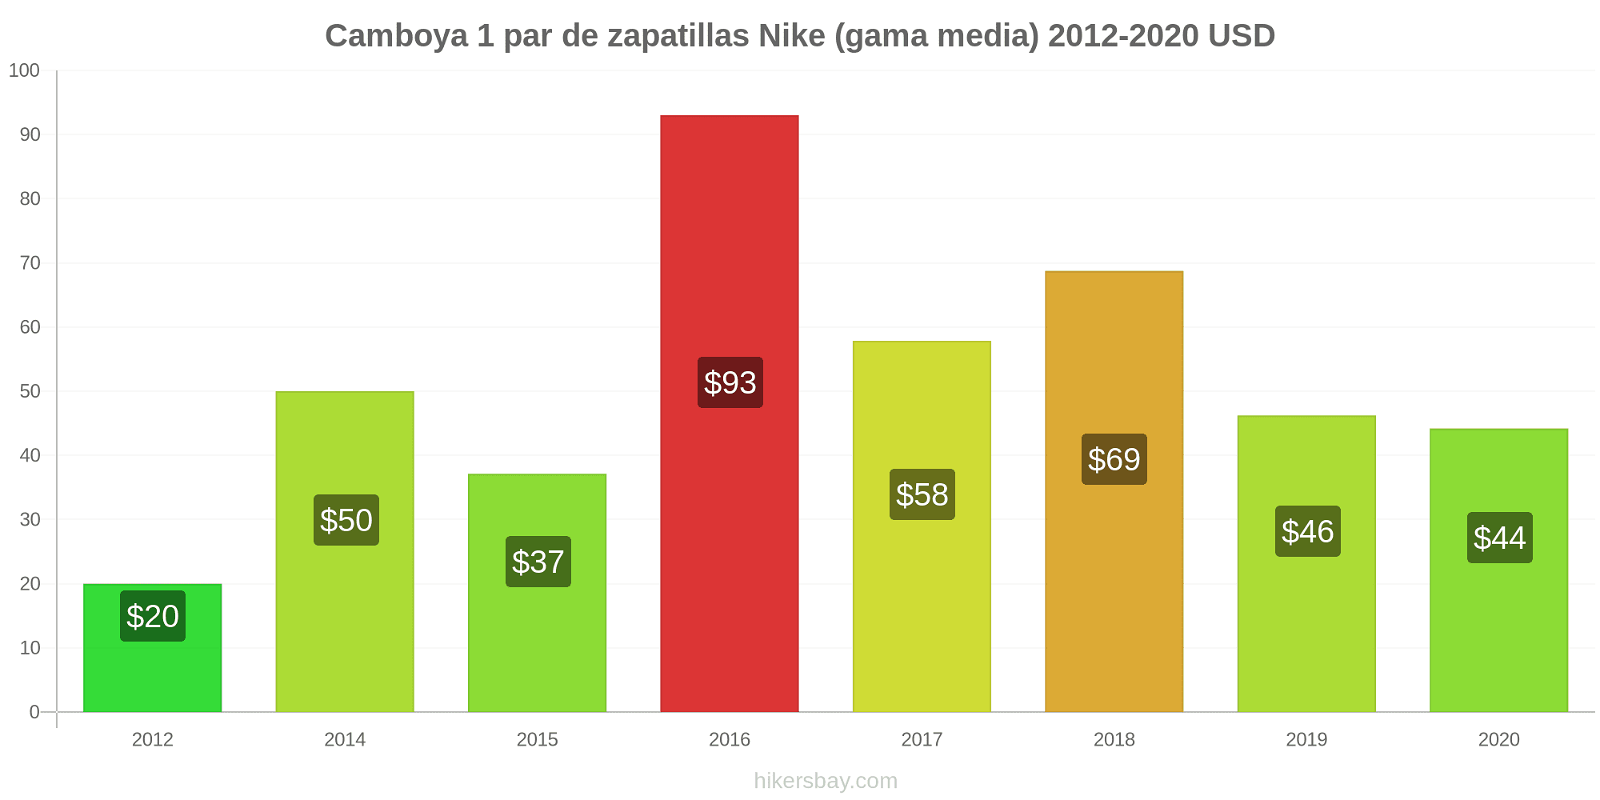 Camboya cambios de precios 1 par de zapatillas Nike (gama media) hikersbay.com